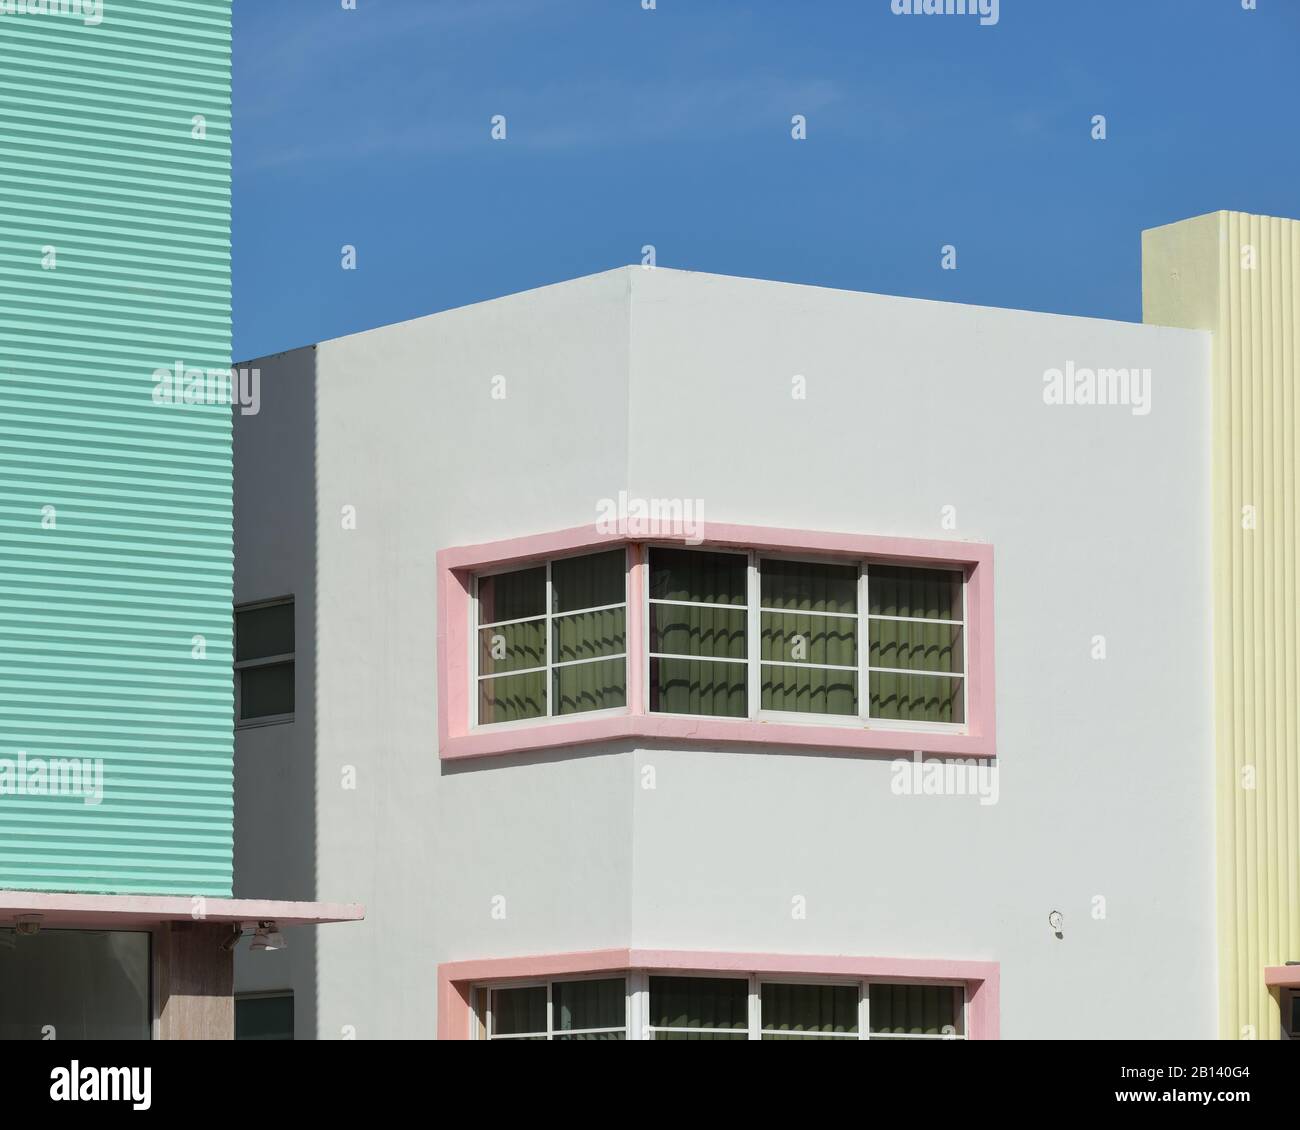 Architecture Art Déco De Miami Beach. Façades des bâtiments de South Beach. Couleurs pastel, motifs géométriques et textures ondulées contre le ciel bleu clair. Banque D'Images